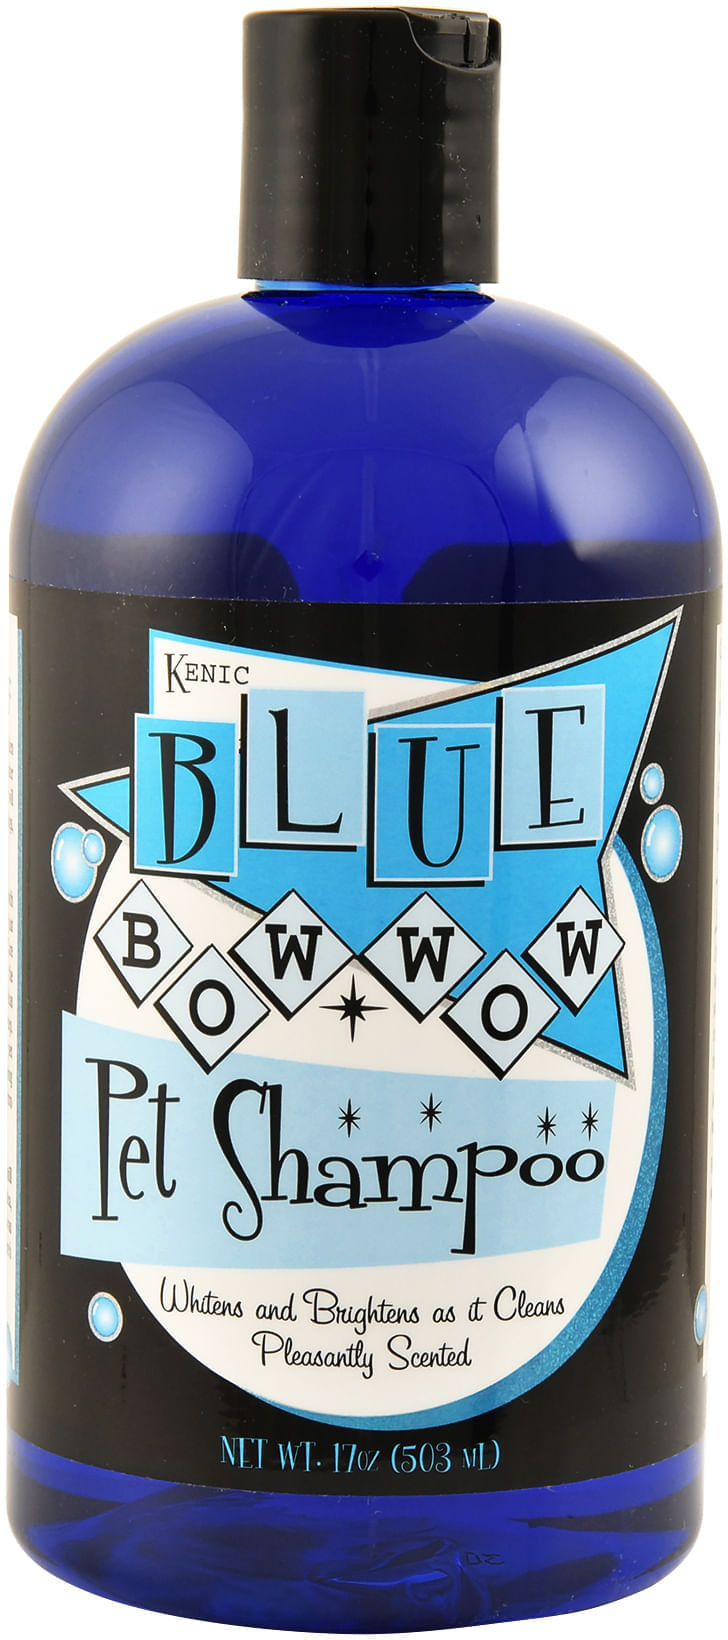 Blue-Bow-Wow-Kenic-RETRO-Shampoo-17-oz-